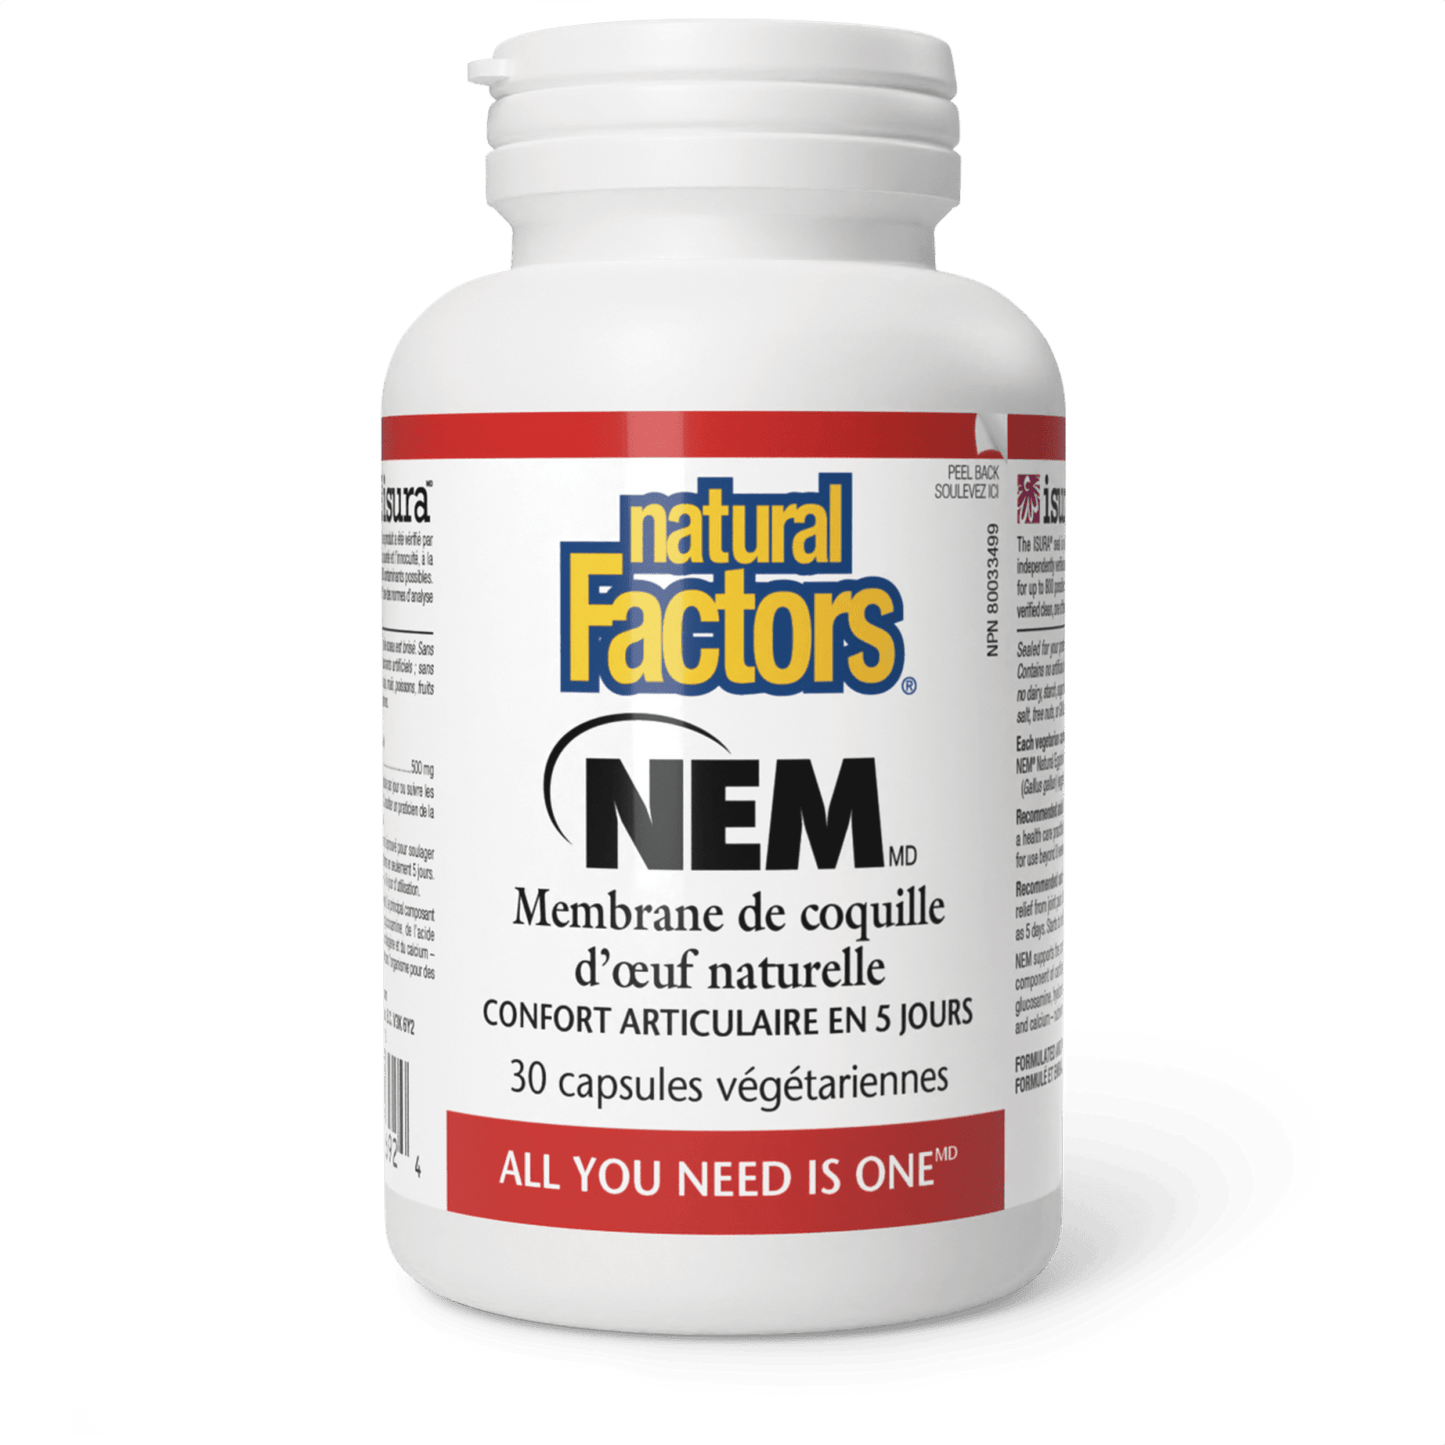 NEM Membrane de coquille d’œuf naturelle 500 mg, Natural Factors|v|image|2692